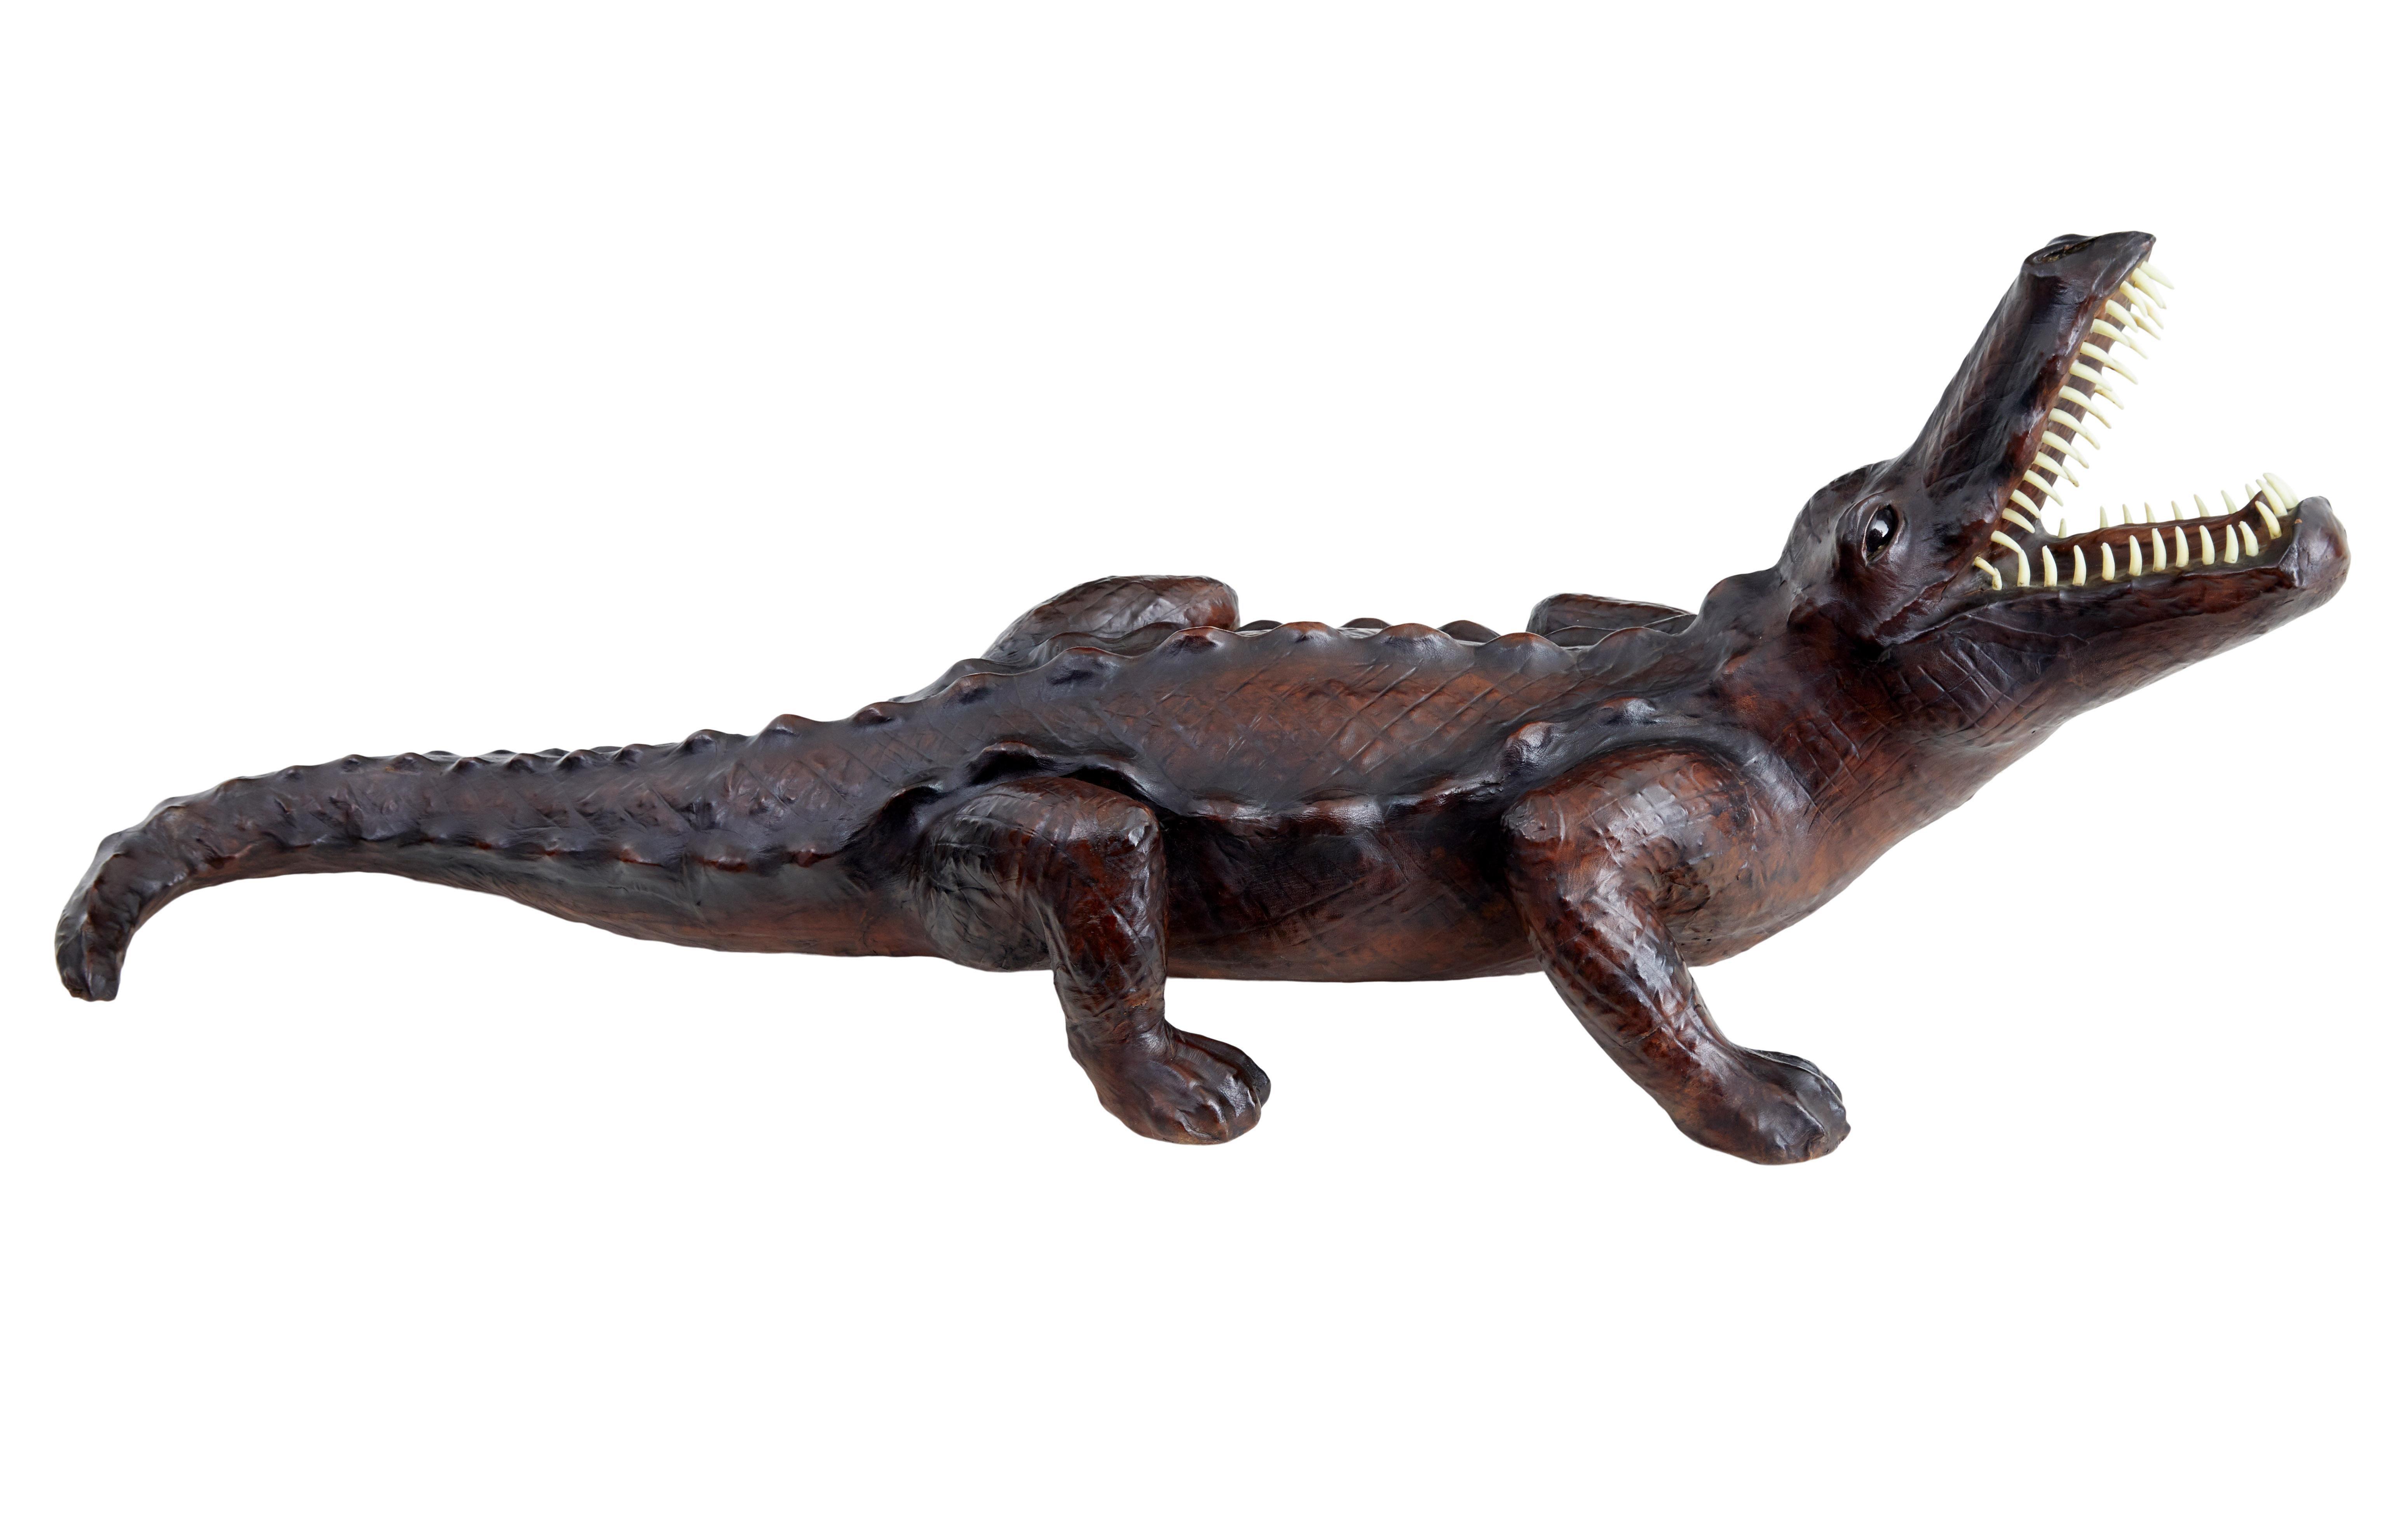 Dekoratives Ledermodell eines Krokodils aus dem 20. Jahrhundert, um 1990.

Ungefähr halbgroßer Neuheitenartikel, der ein Krokodil mit erhobenem Kopf in angriffslustiger Haltung abbildet.  Bekleidet mit einem Kunstleder, das eine gute Patina